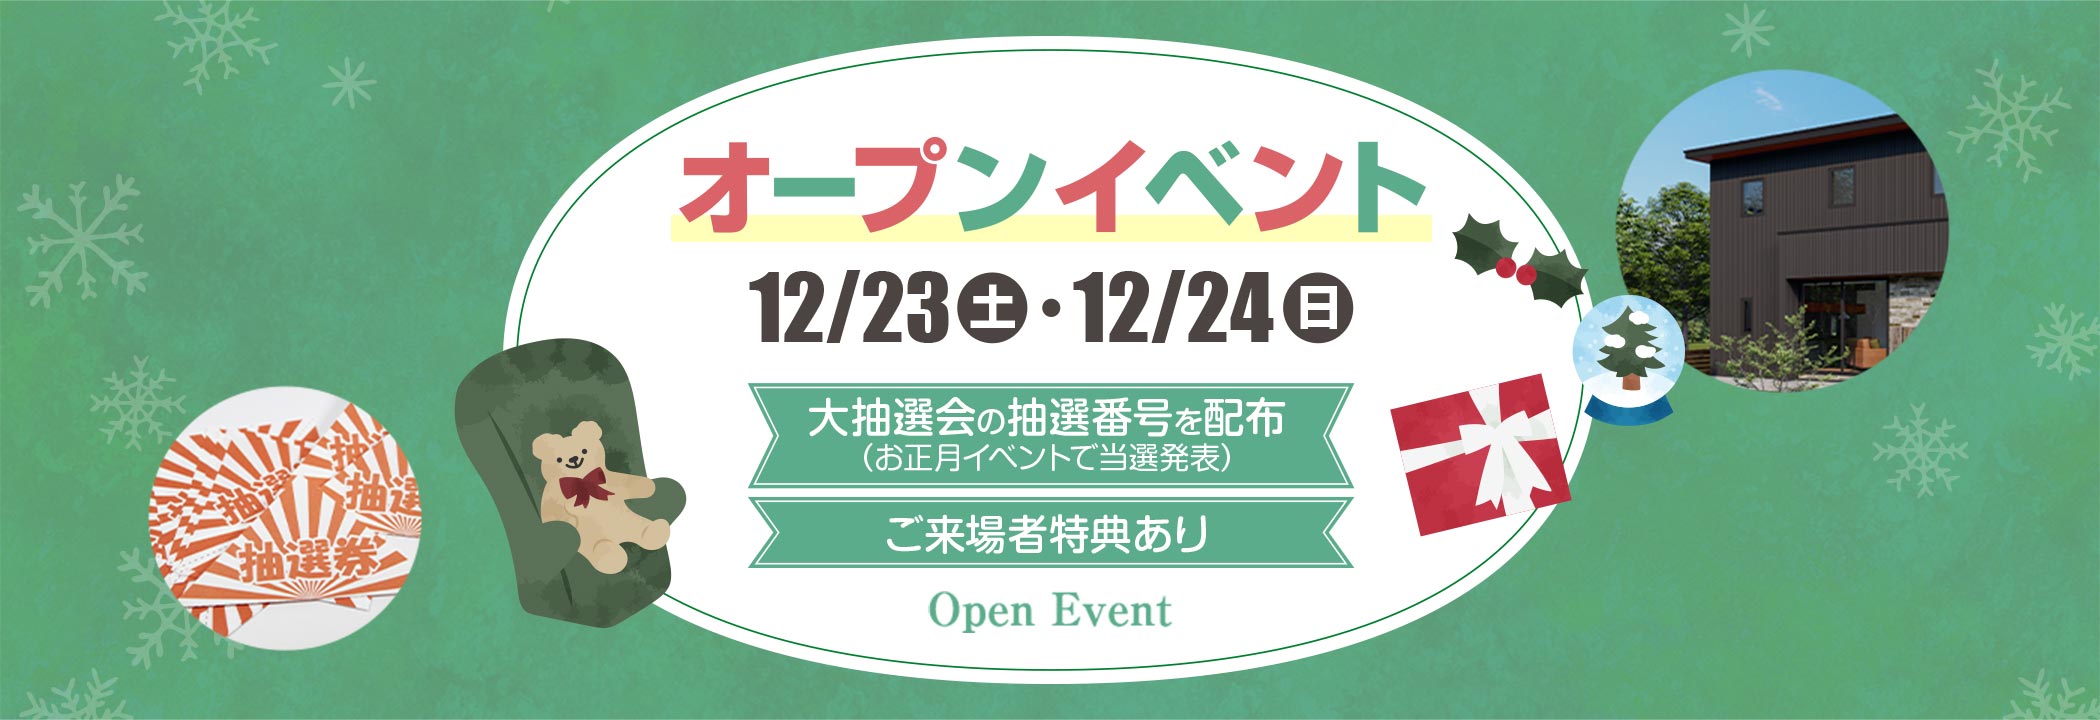 オープンイベント：12/23（土）12/24（日） 大抽選会の抽選番号を配布（お正月イベントで当選発表）、ご来場者特典あり